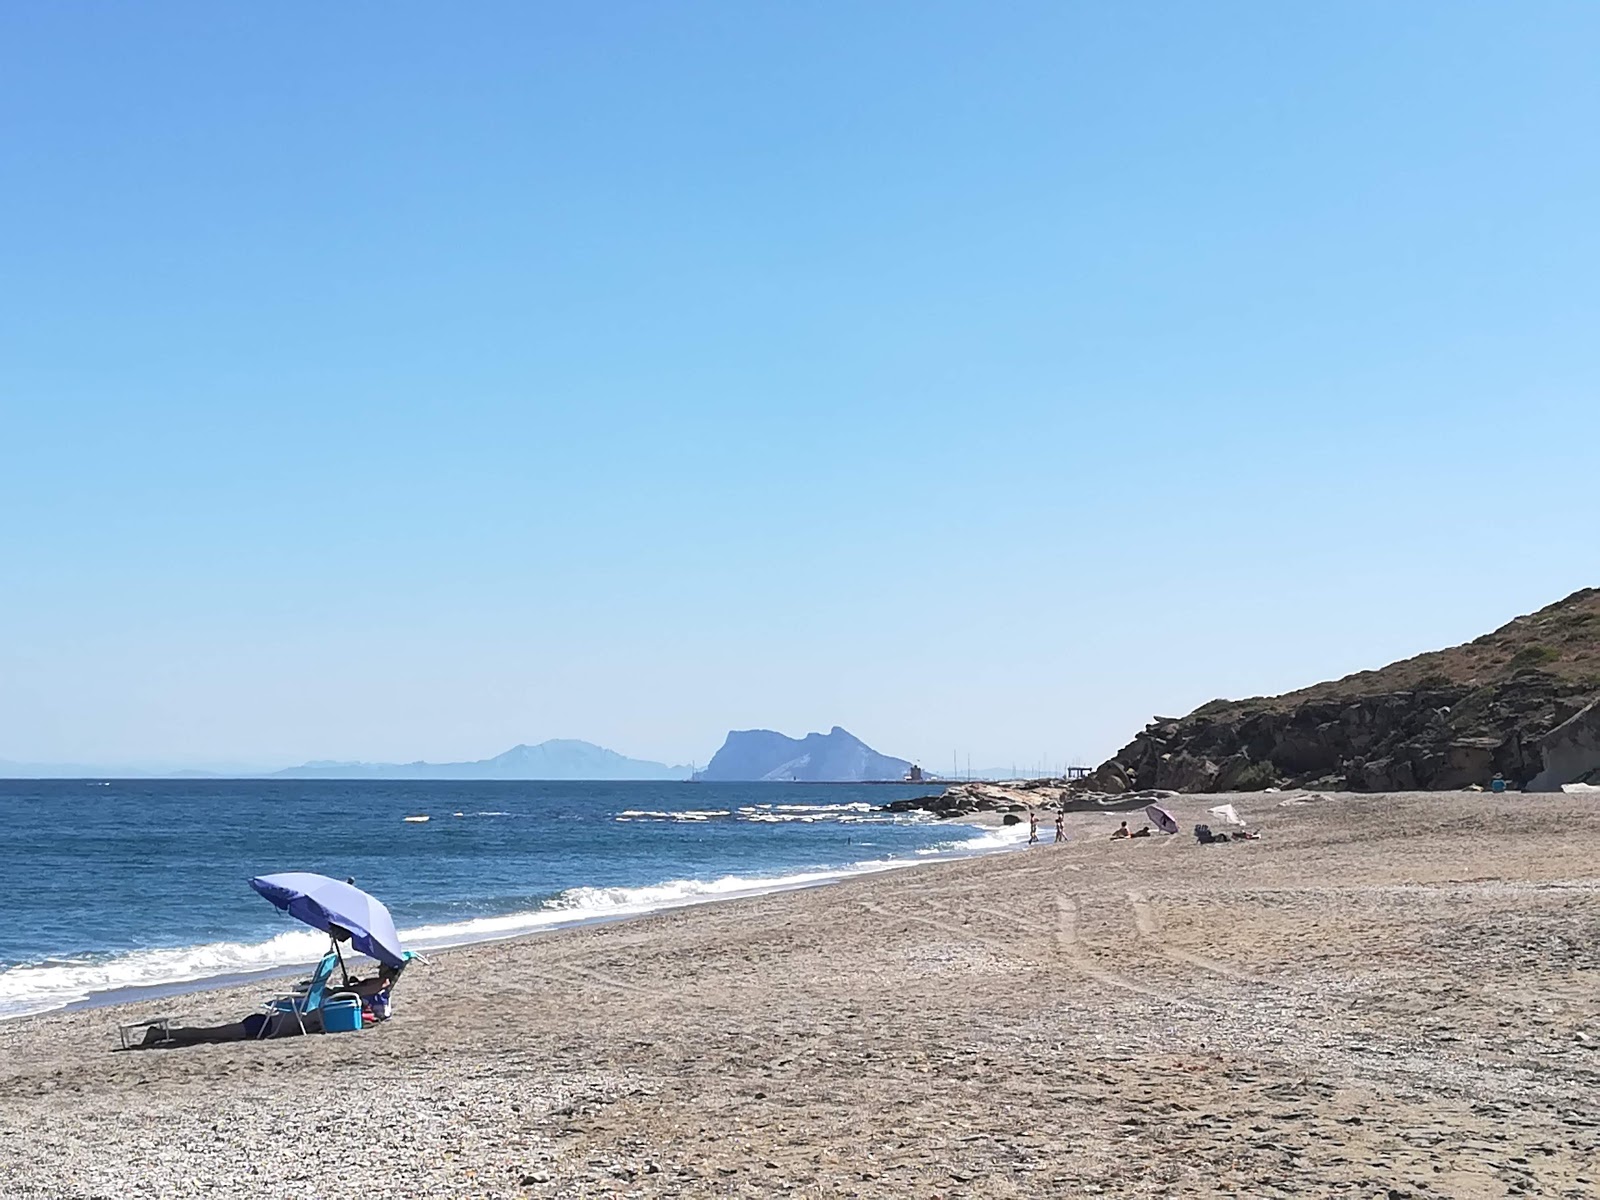 Foto af Playa de Cala Sardina - populært sted blandt afslapningskendere